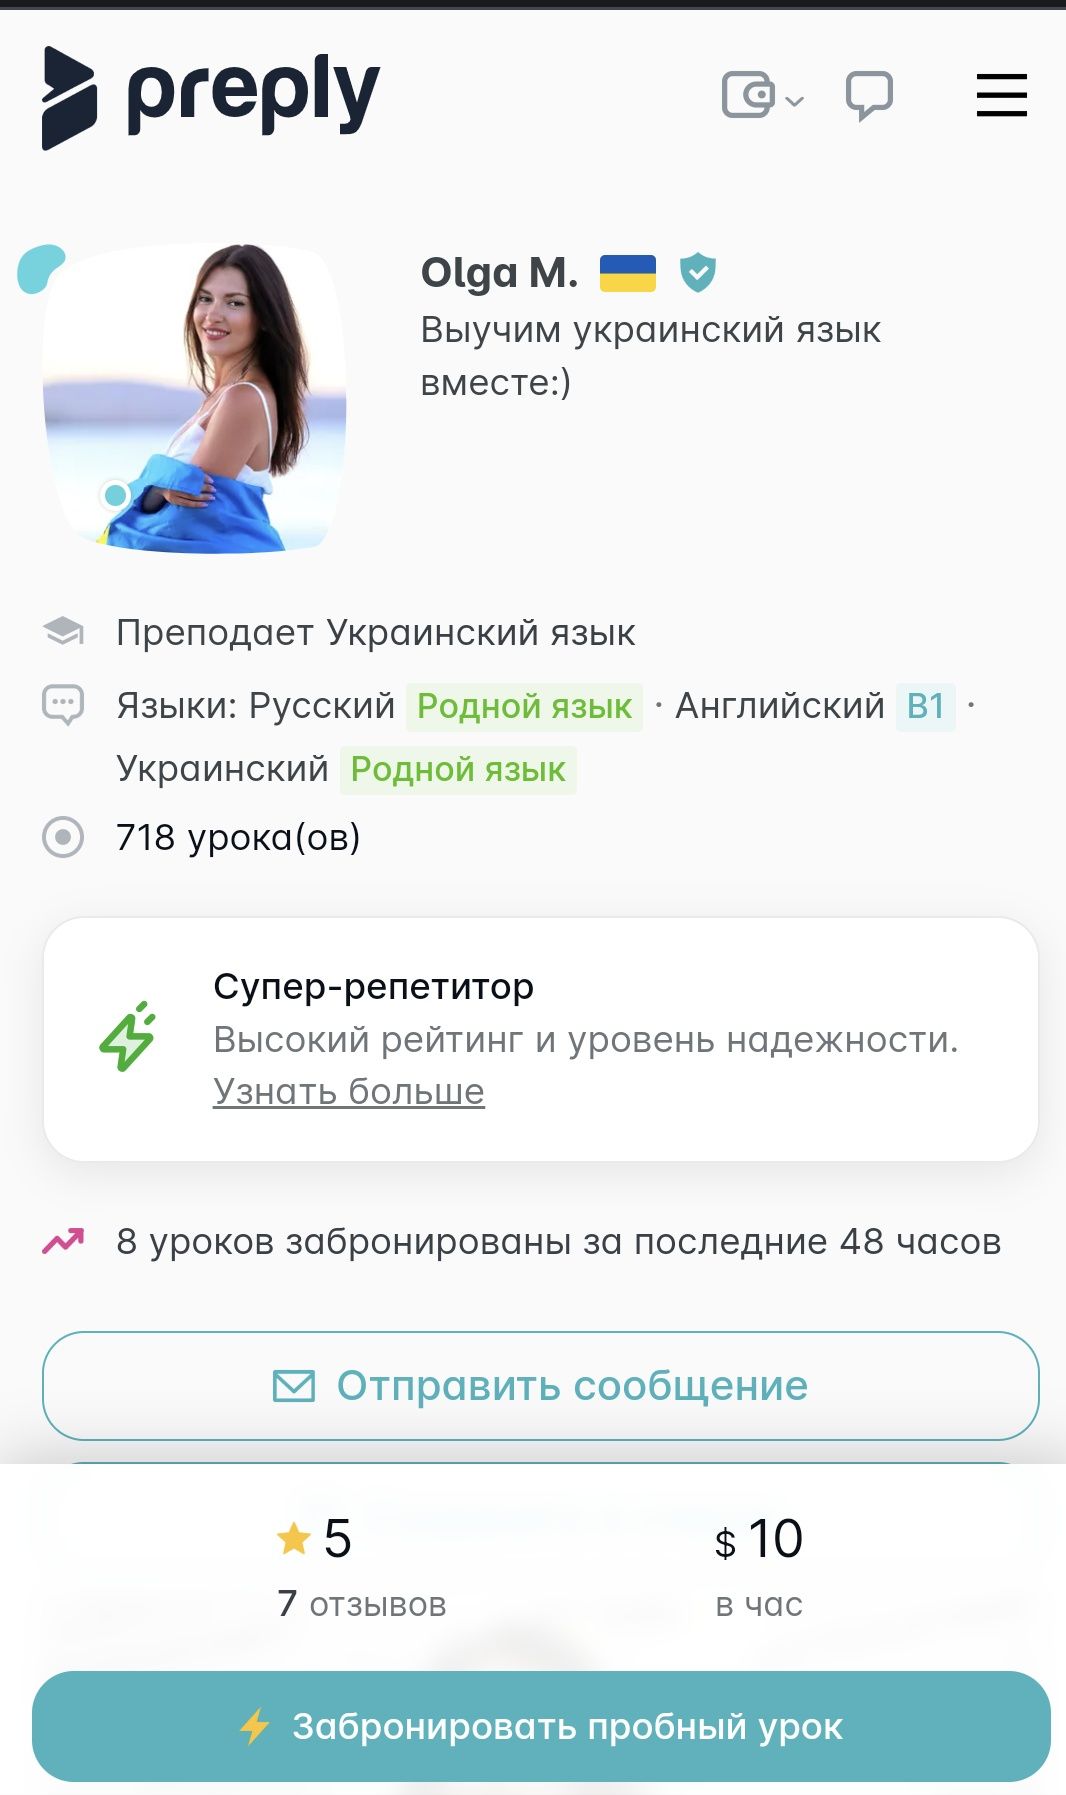 Подготовка к НМТ, Репетитор украинского языка! (Skype, viber, zoom)